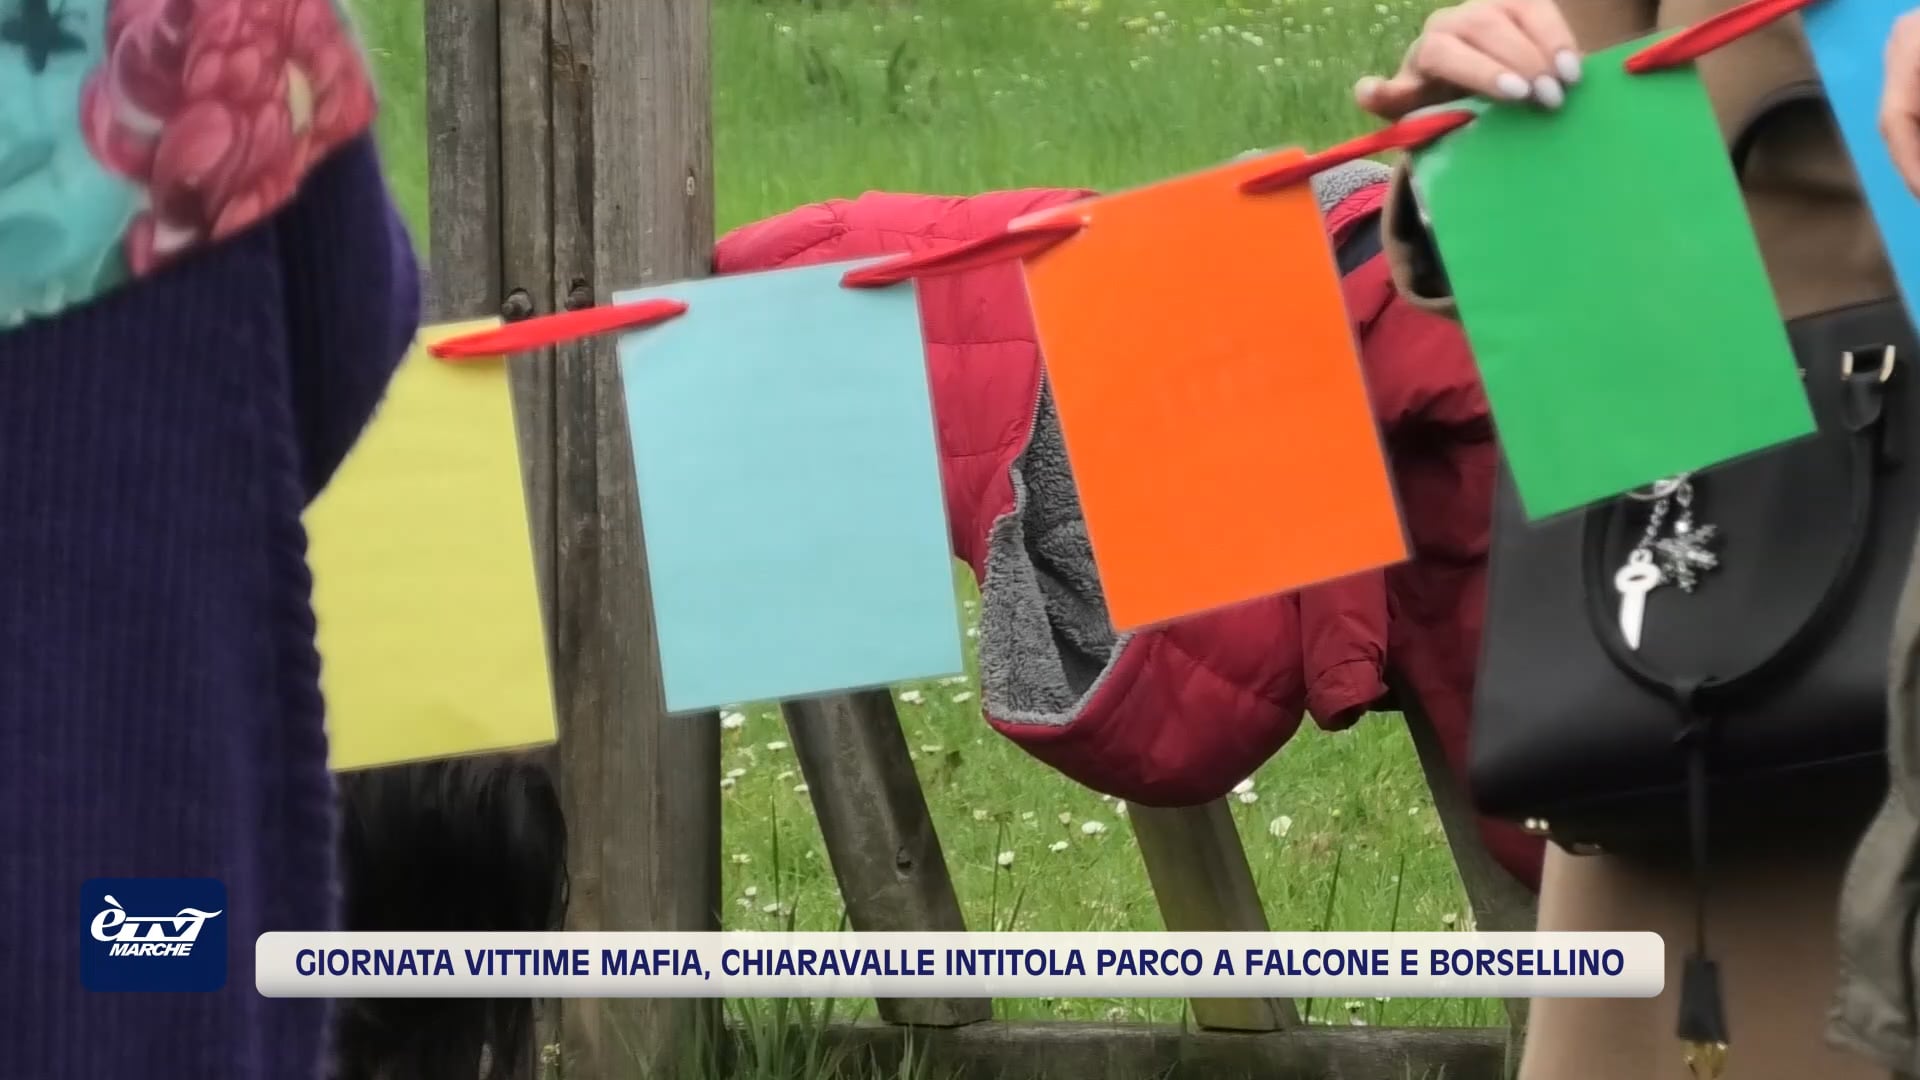 Giornata vittime mafia, Chiaravalle intitola parco a Falcone e Borsellino - VIDEO